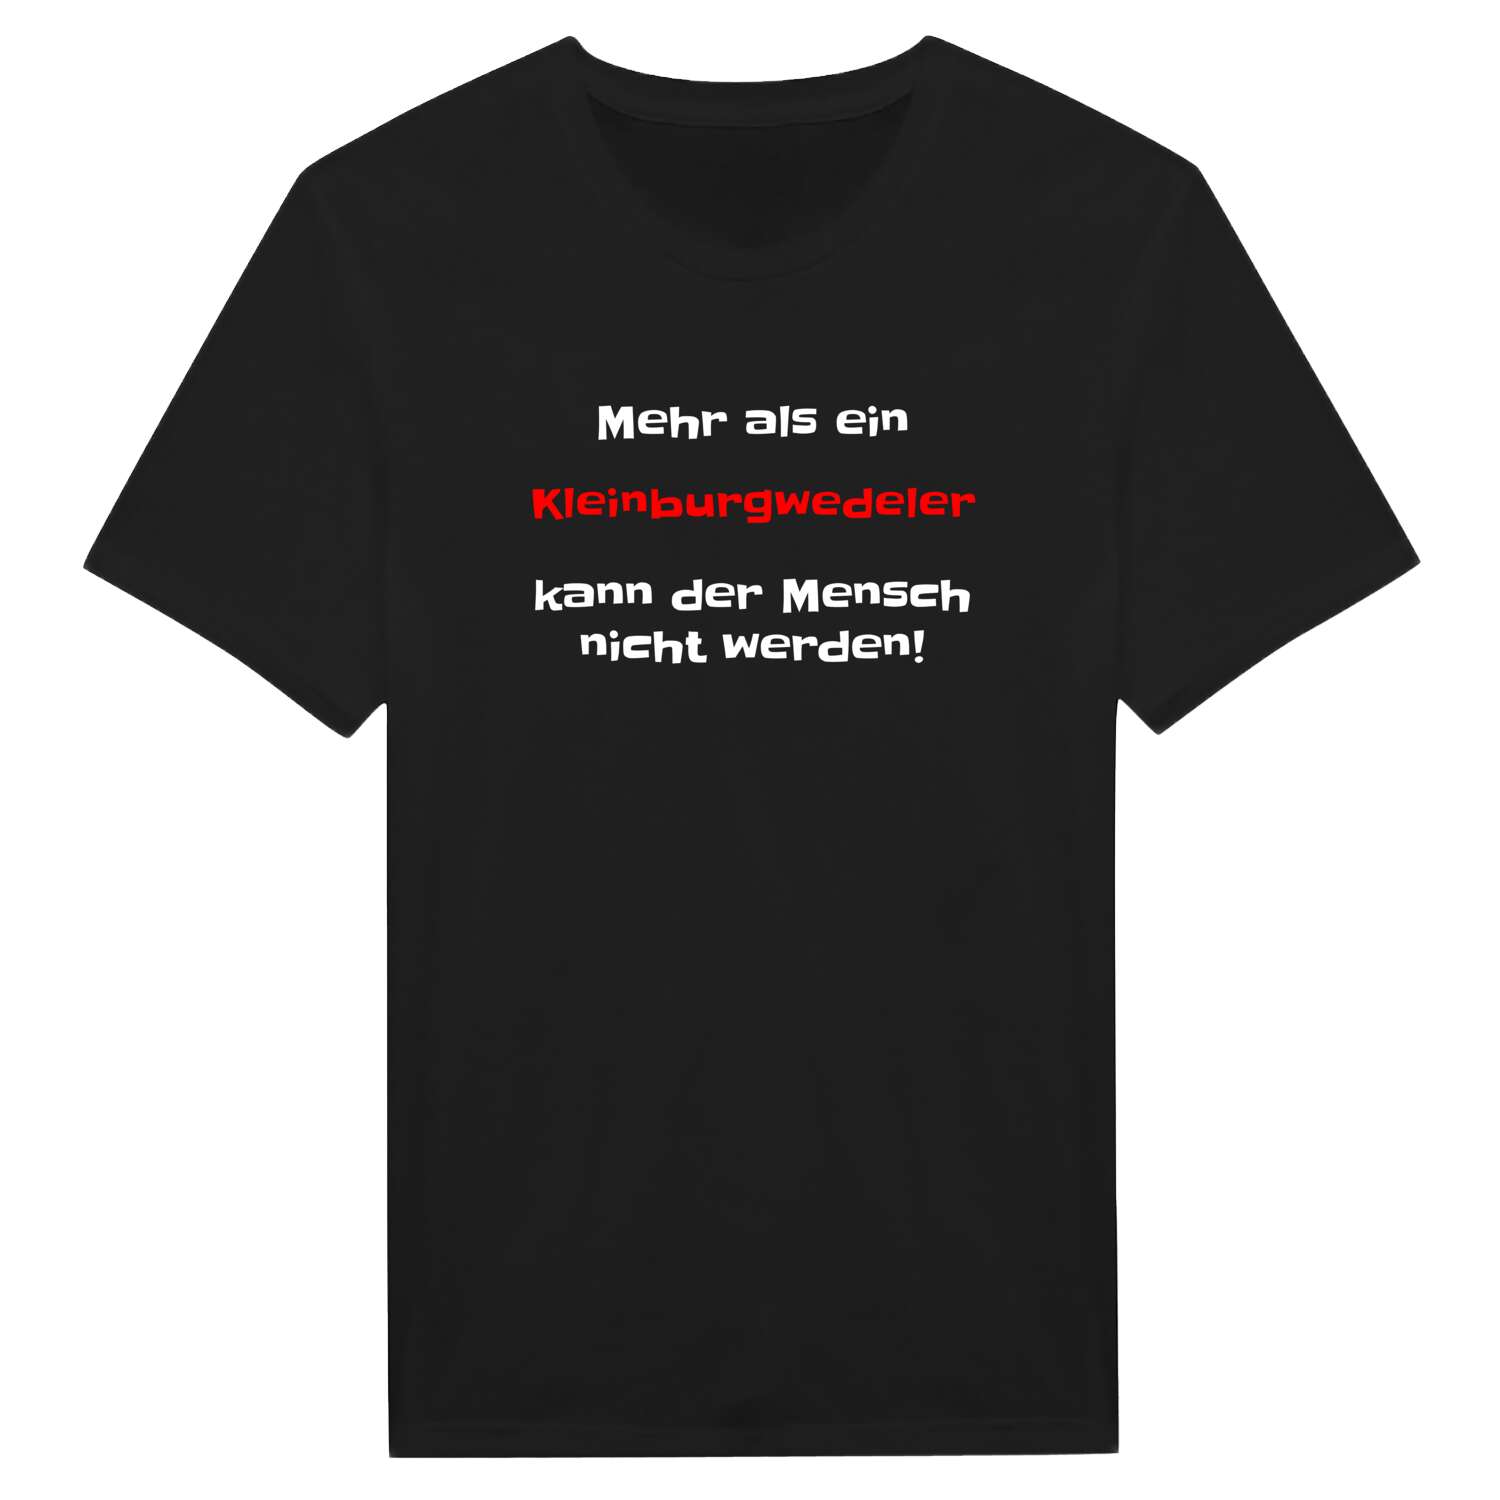 Kleinburgwedel T-Shirt »Mehr als ein«